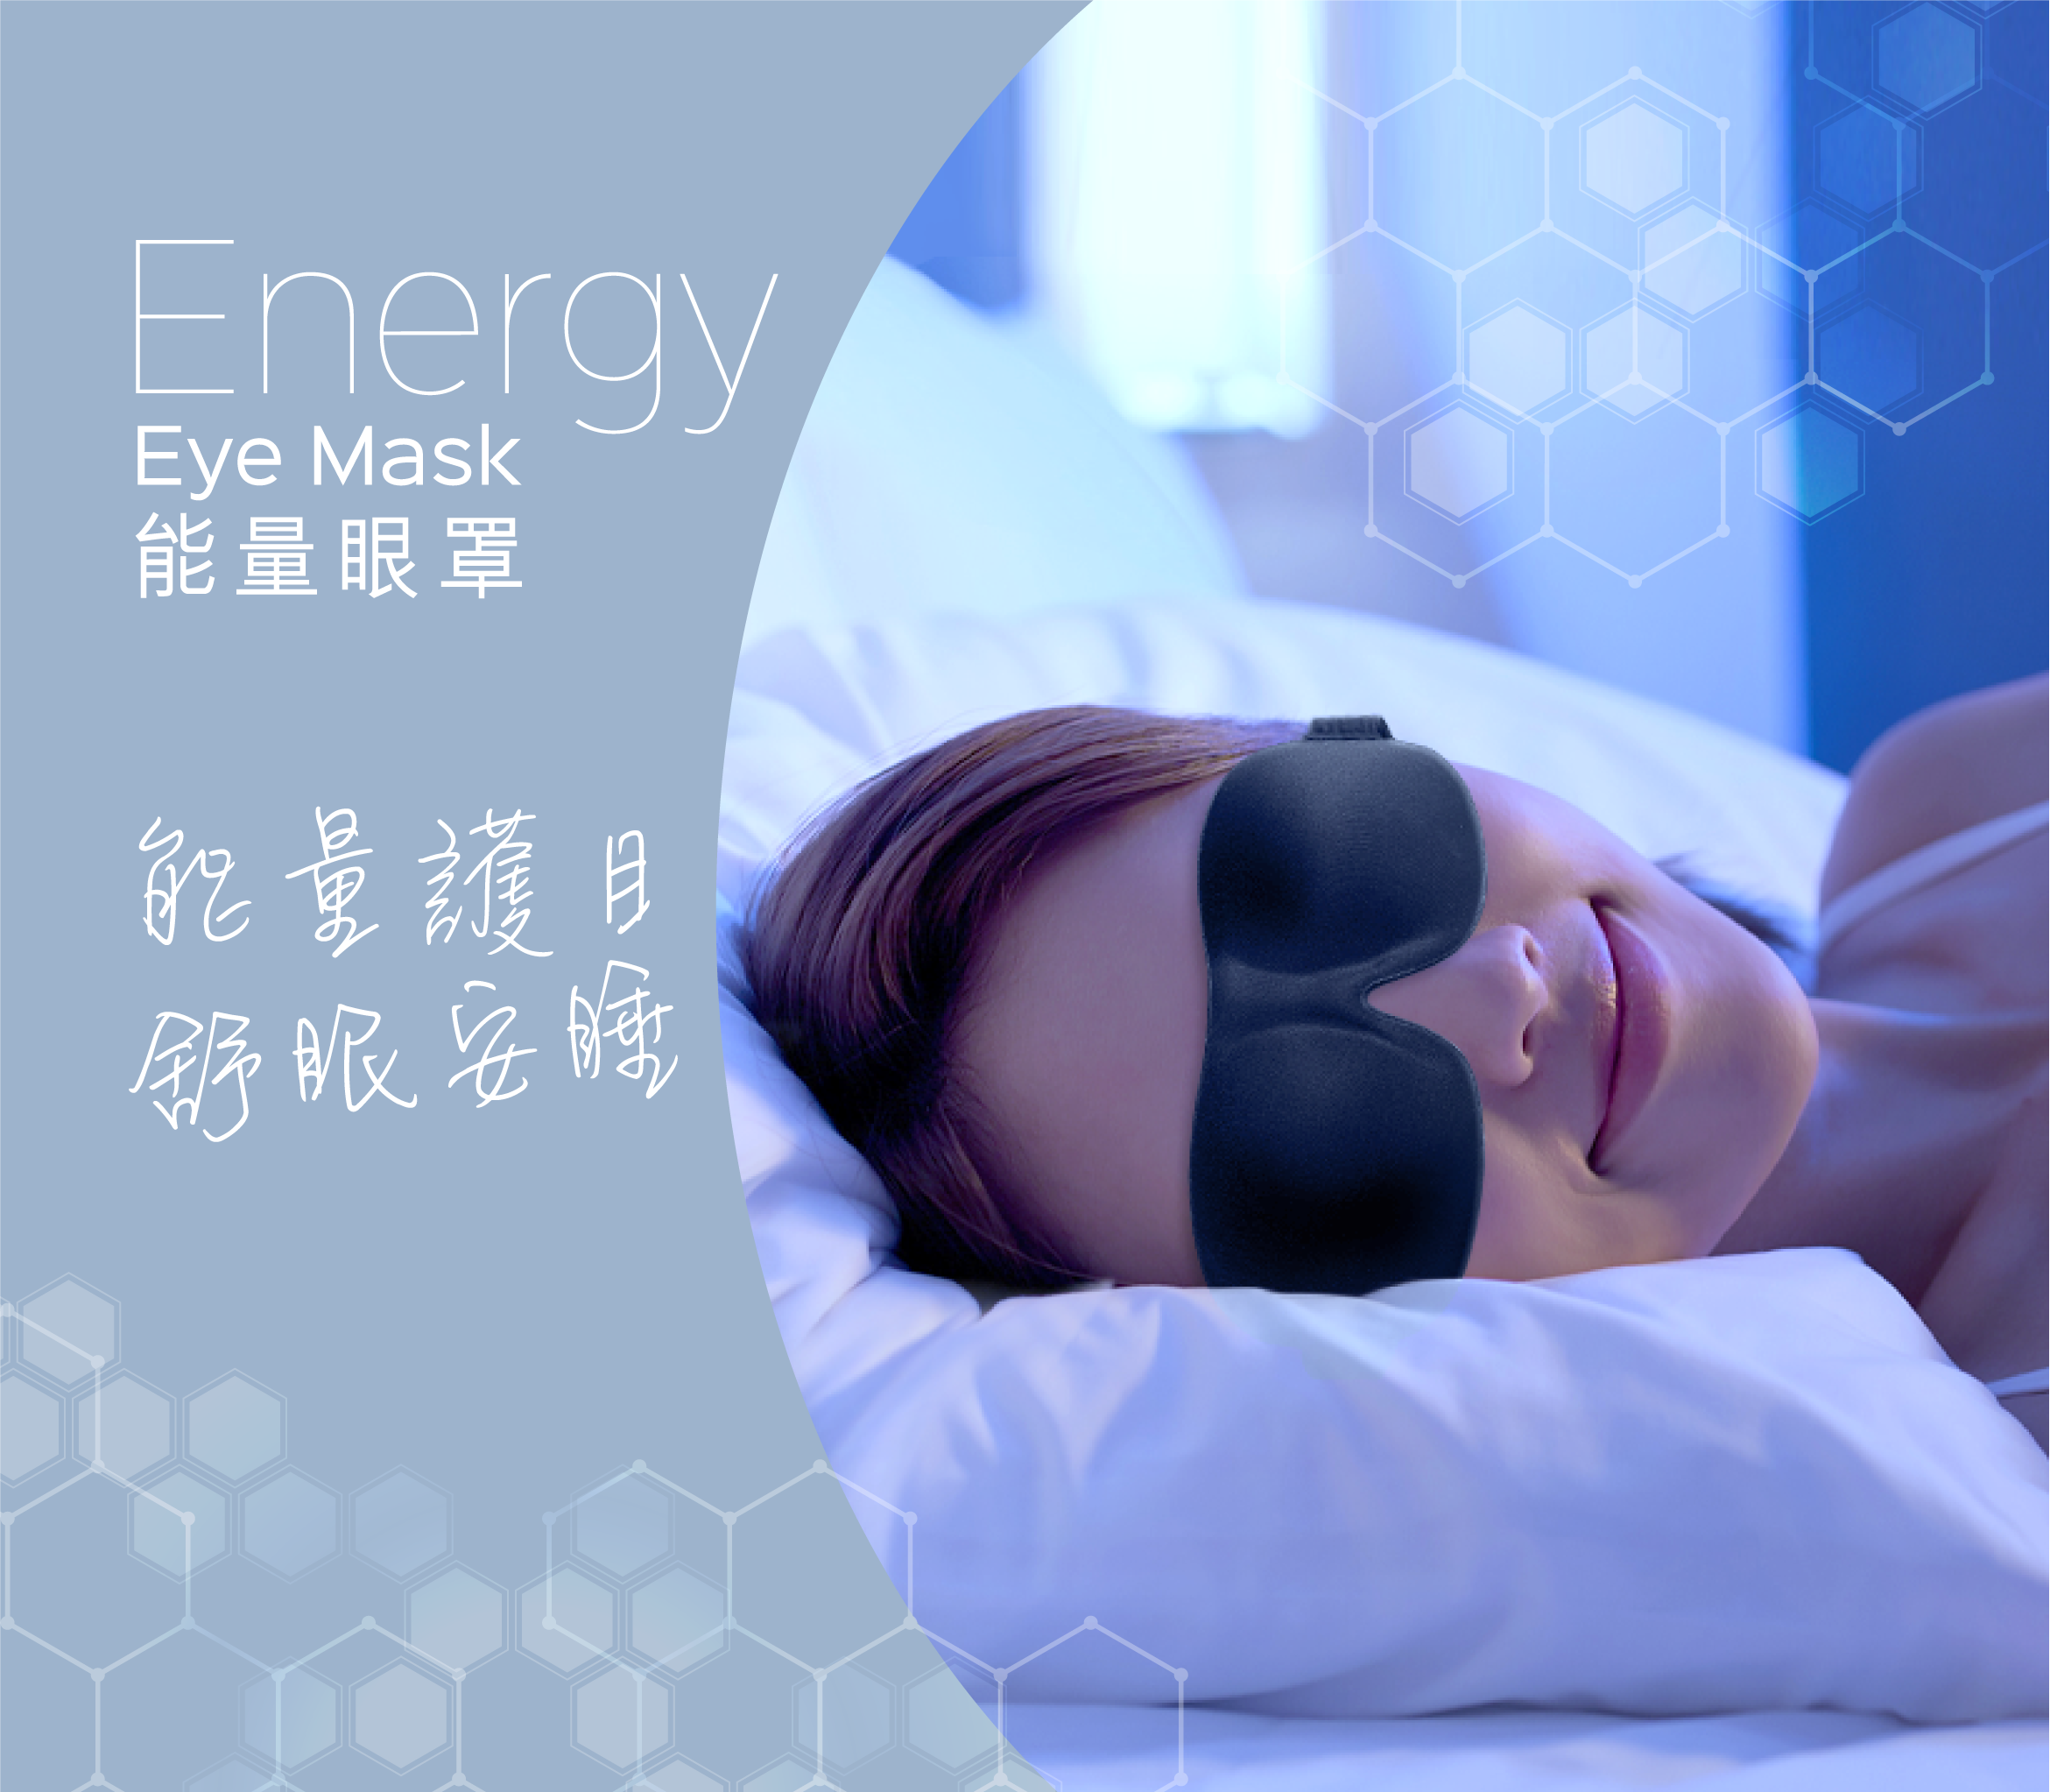 Energy Eye Mask Homepage Hero Mobile